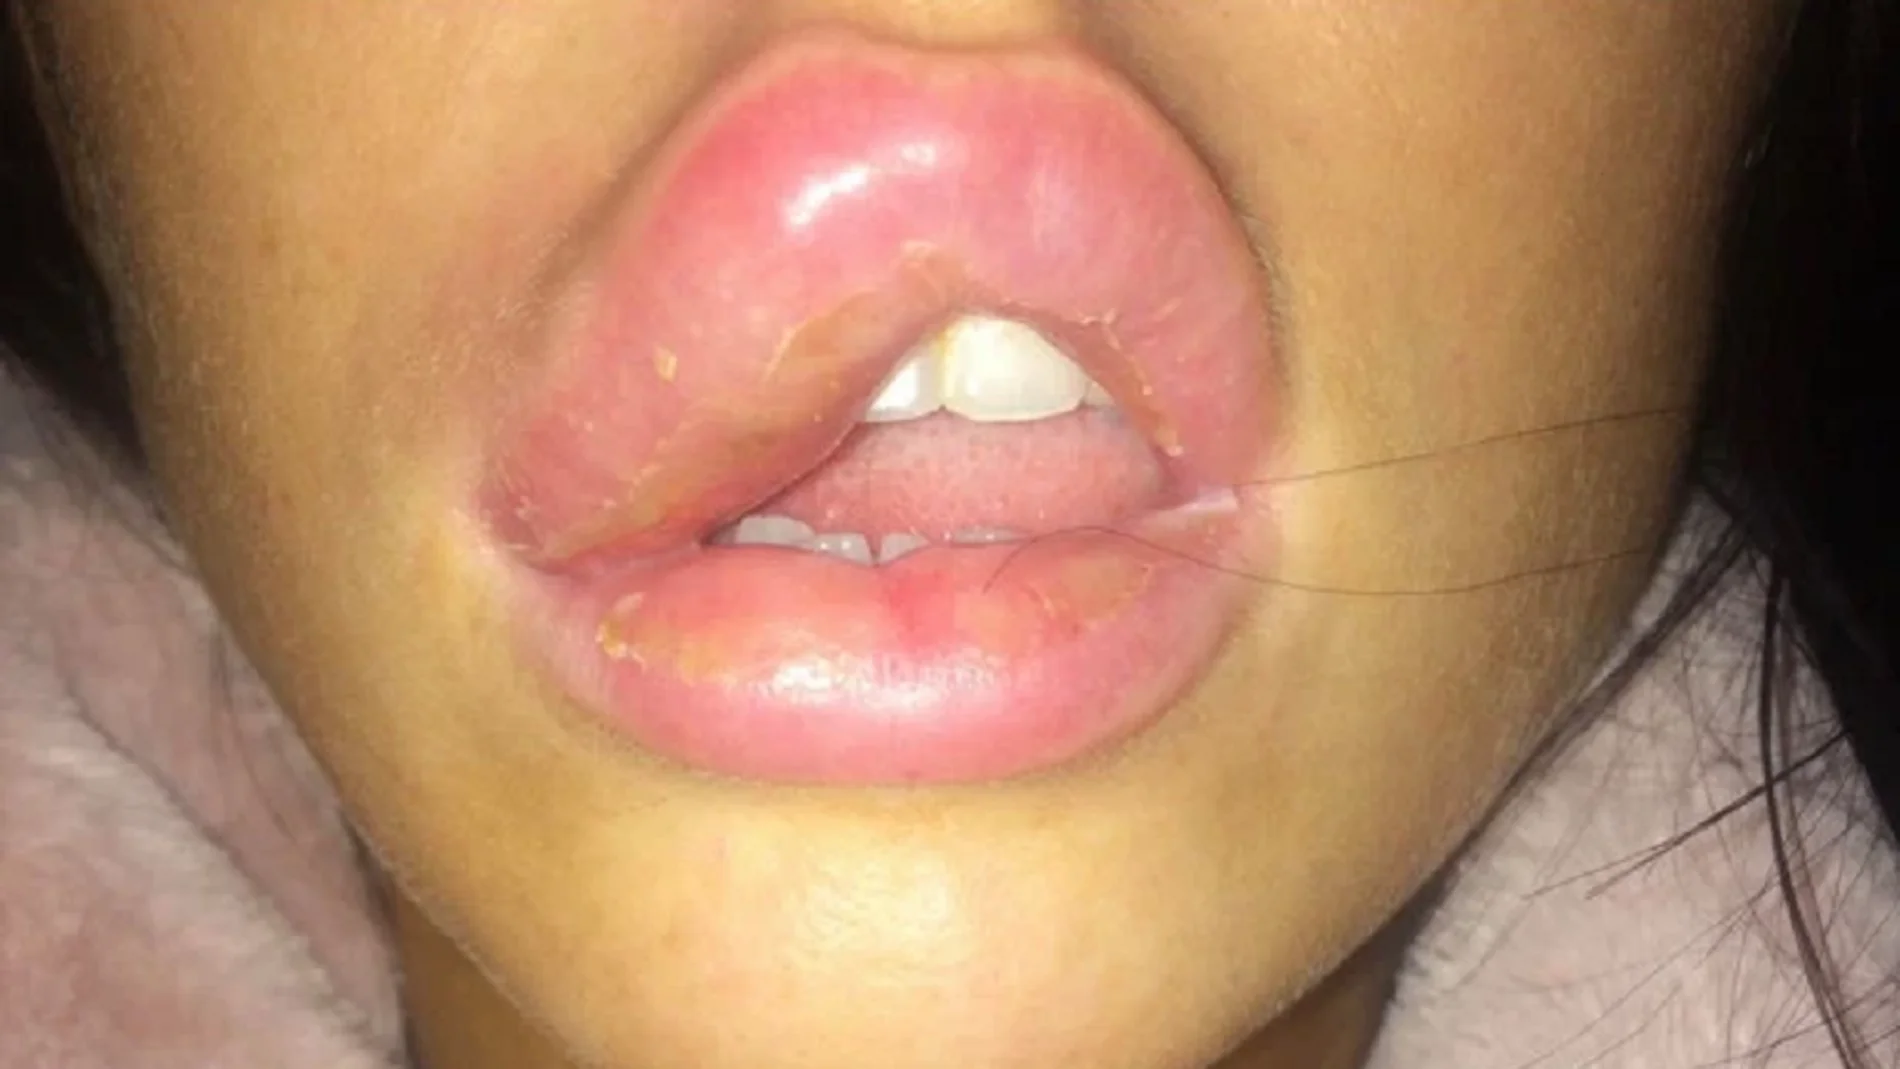 Imagen de Jessica Myott con el labio hinchado debido a la infección.